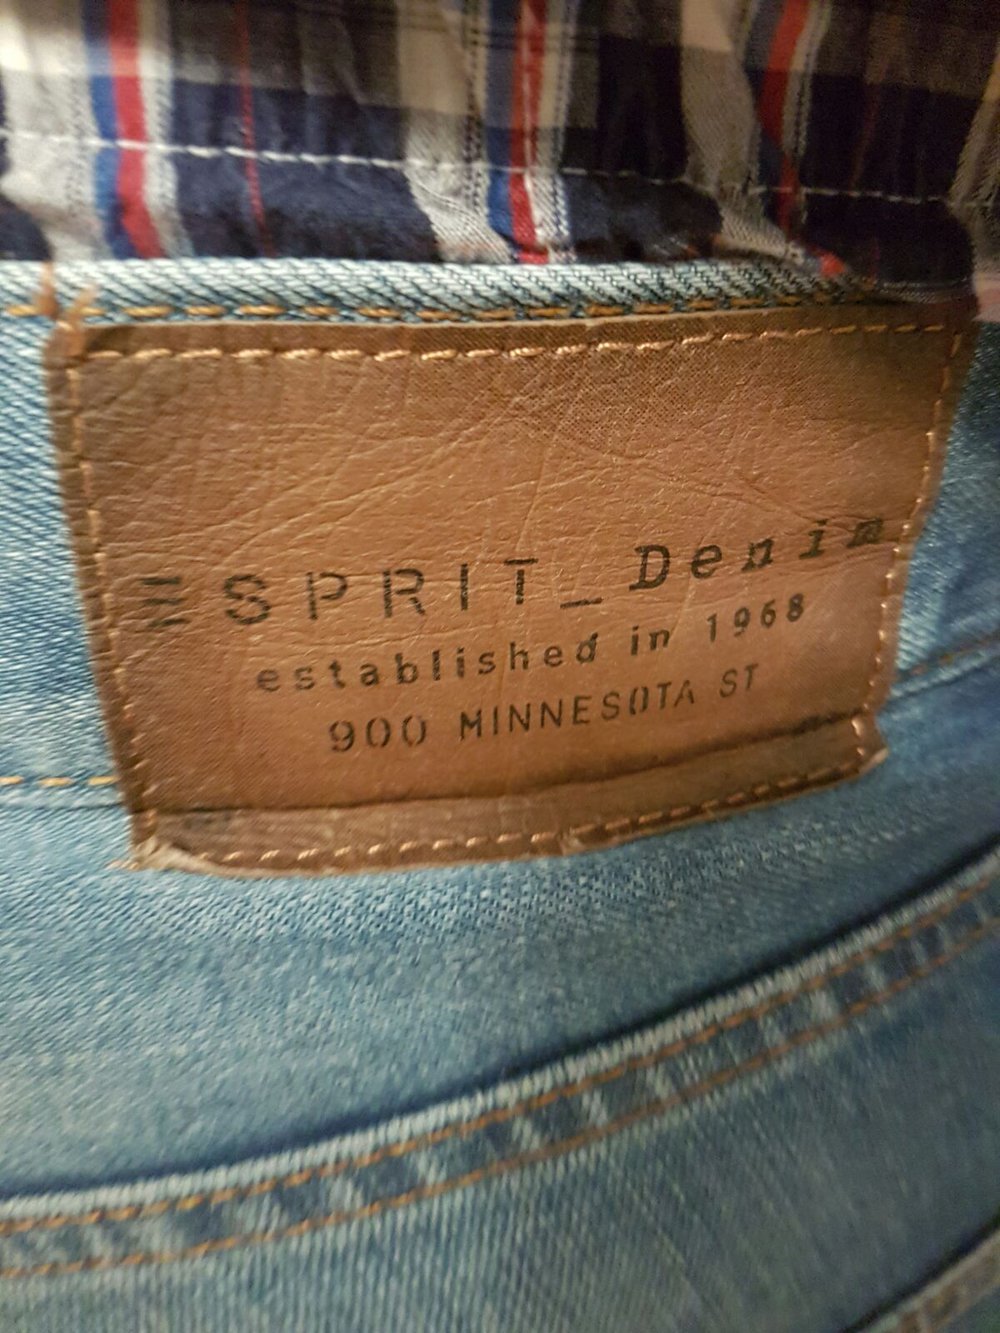 Jeans von Esprit, Große Grösse (36x36)